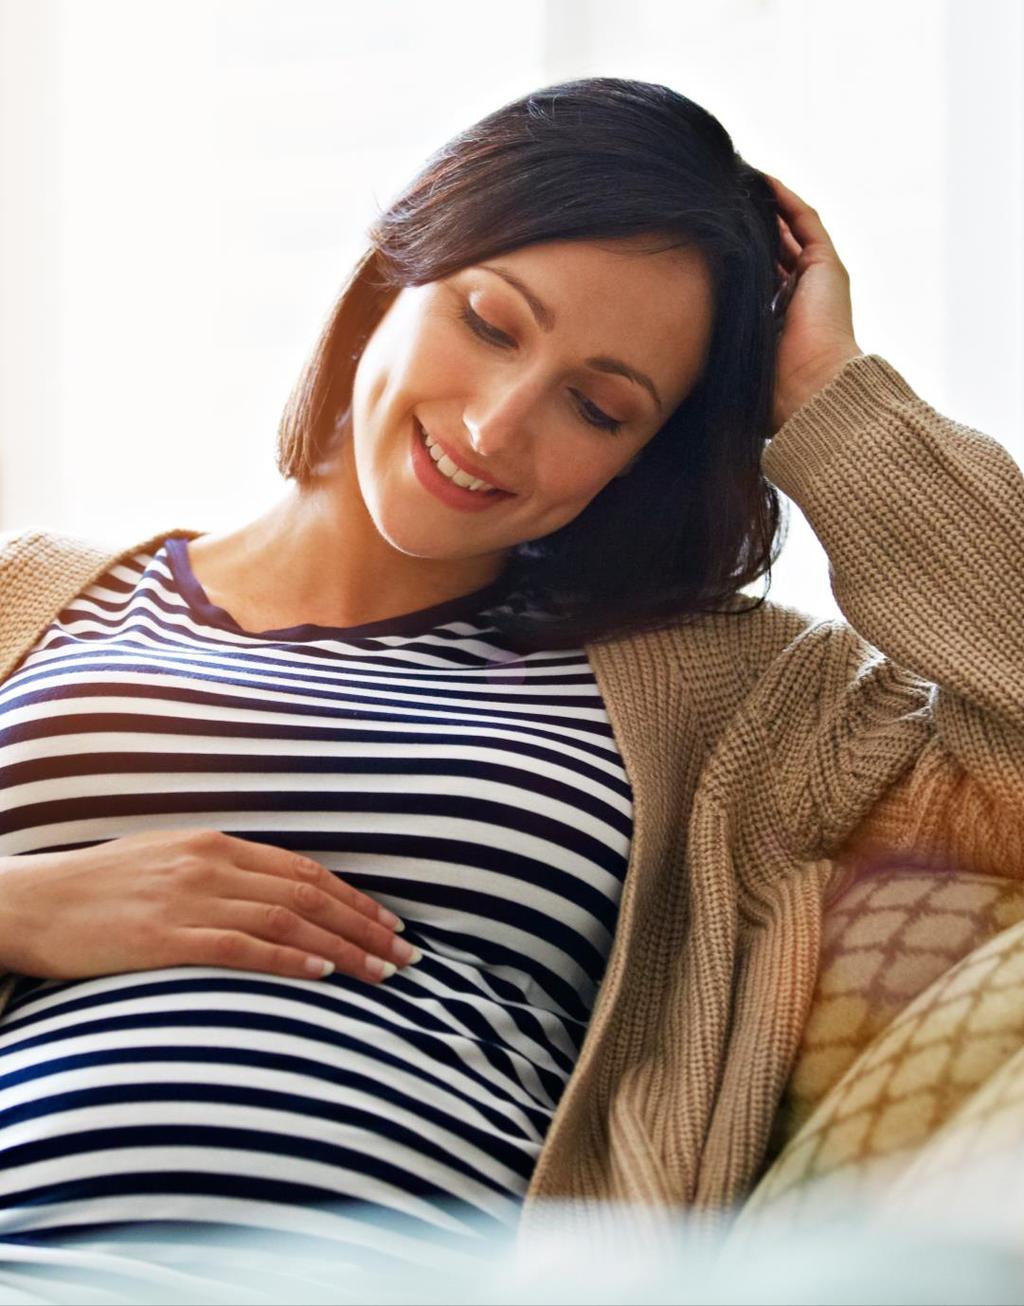 Embarazo Un buen cuidado de la salud bucal ayuda a prevenir problemas durante el embarazo.